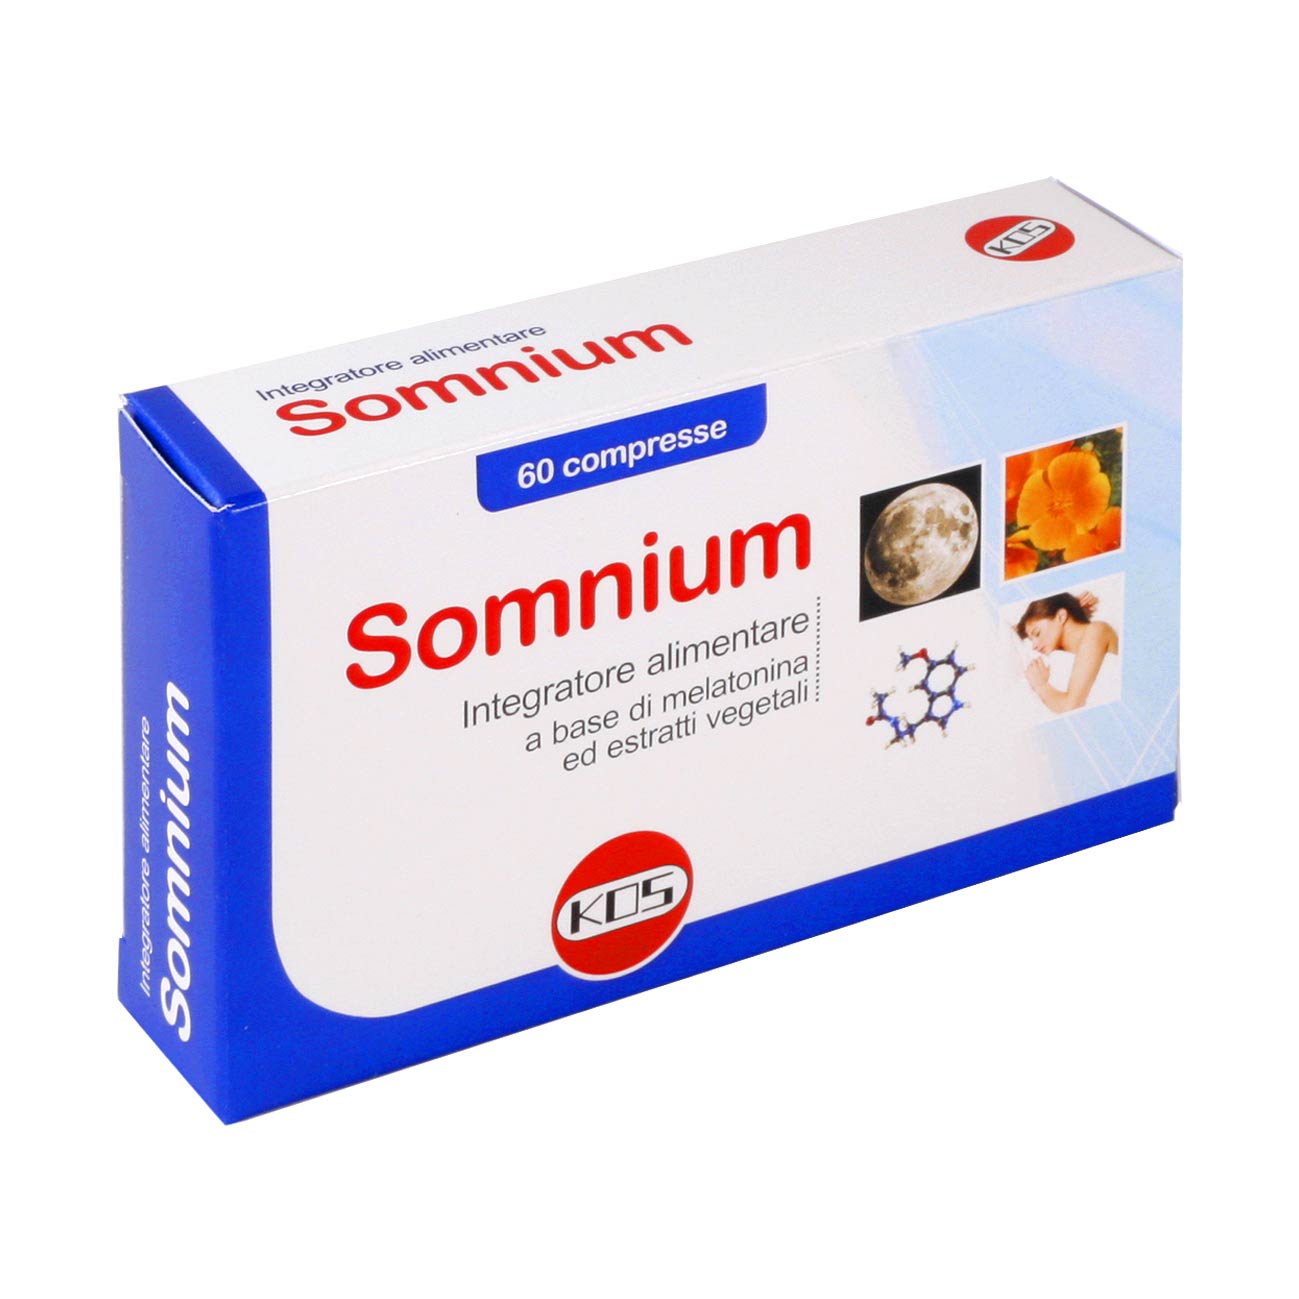 Somnium 60 compresse              